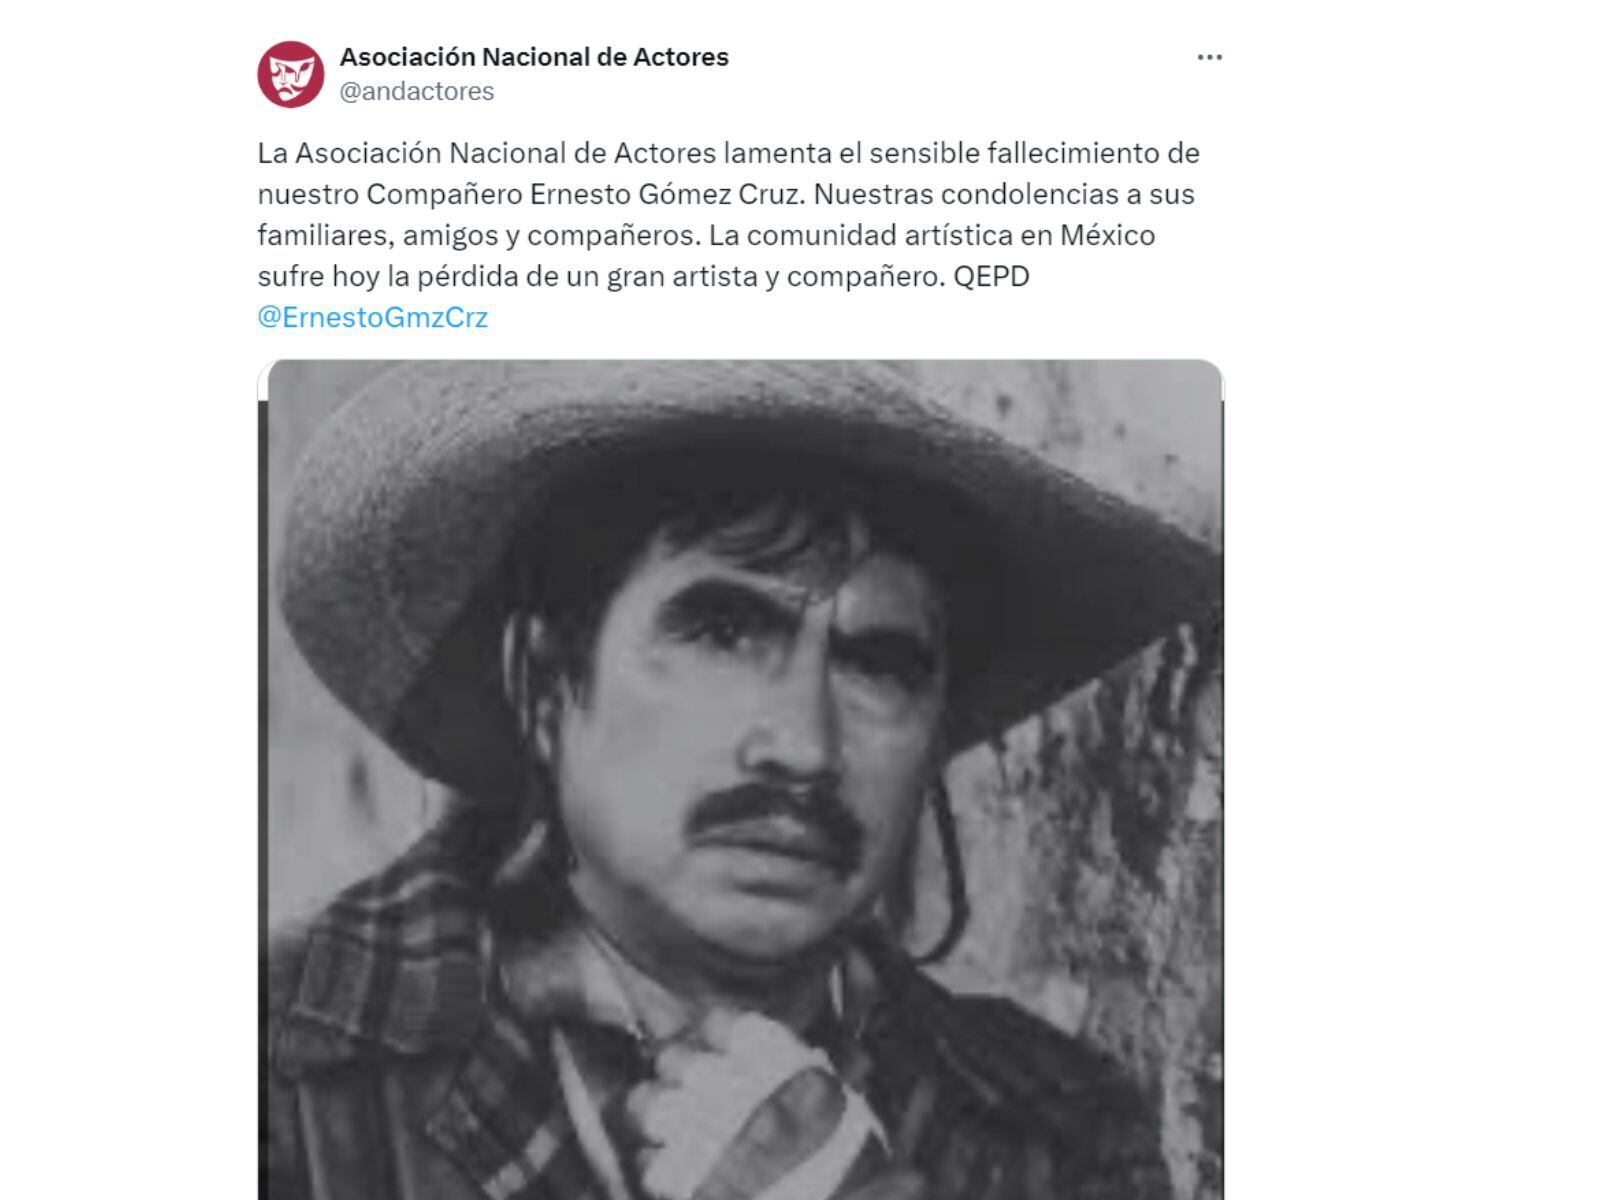 El mensaje con el que la Asociación Nacional de Actores confirmó la muerte de Ernesto Gómez Cruz (Foto: @andactores / X)